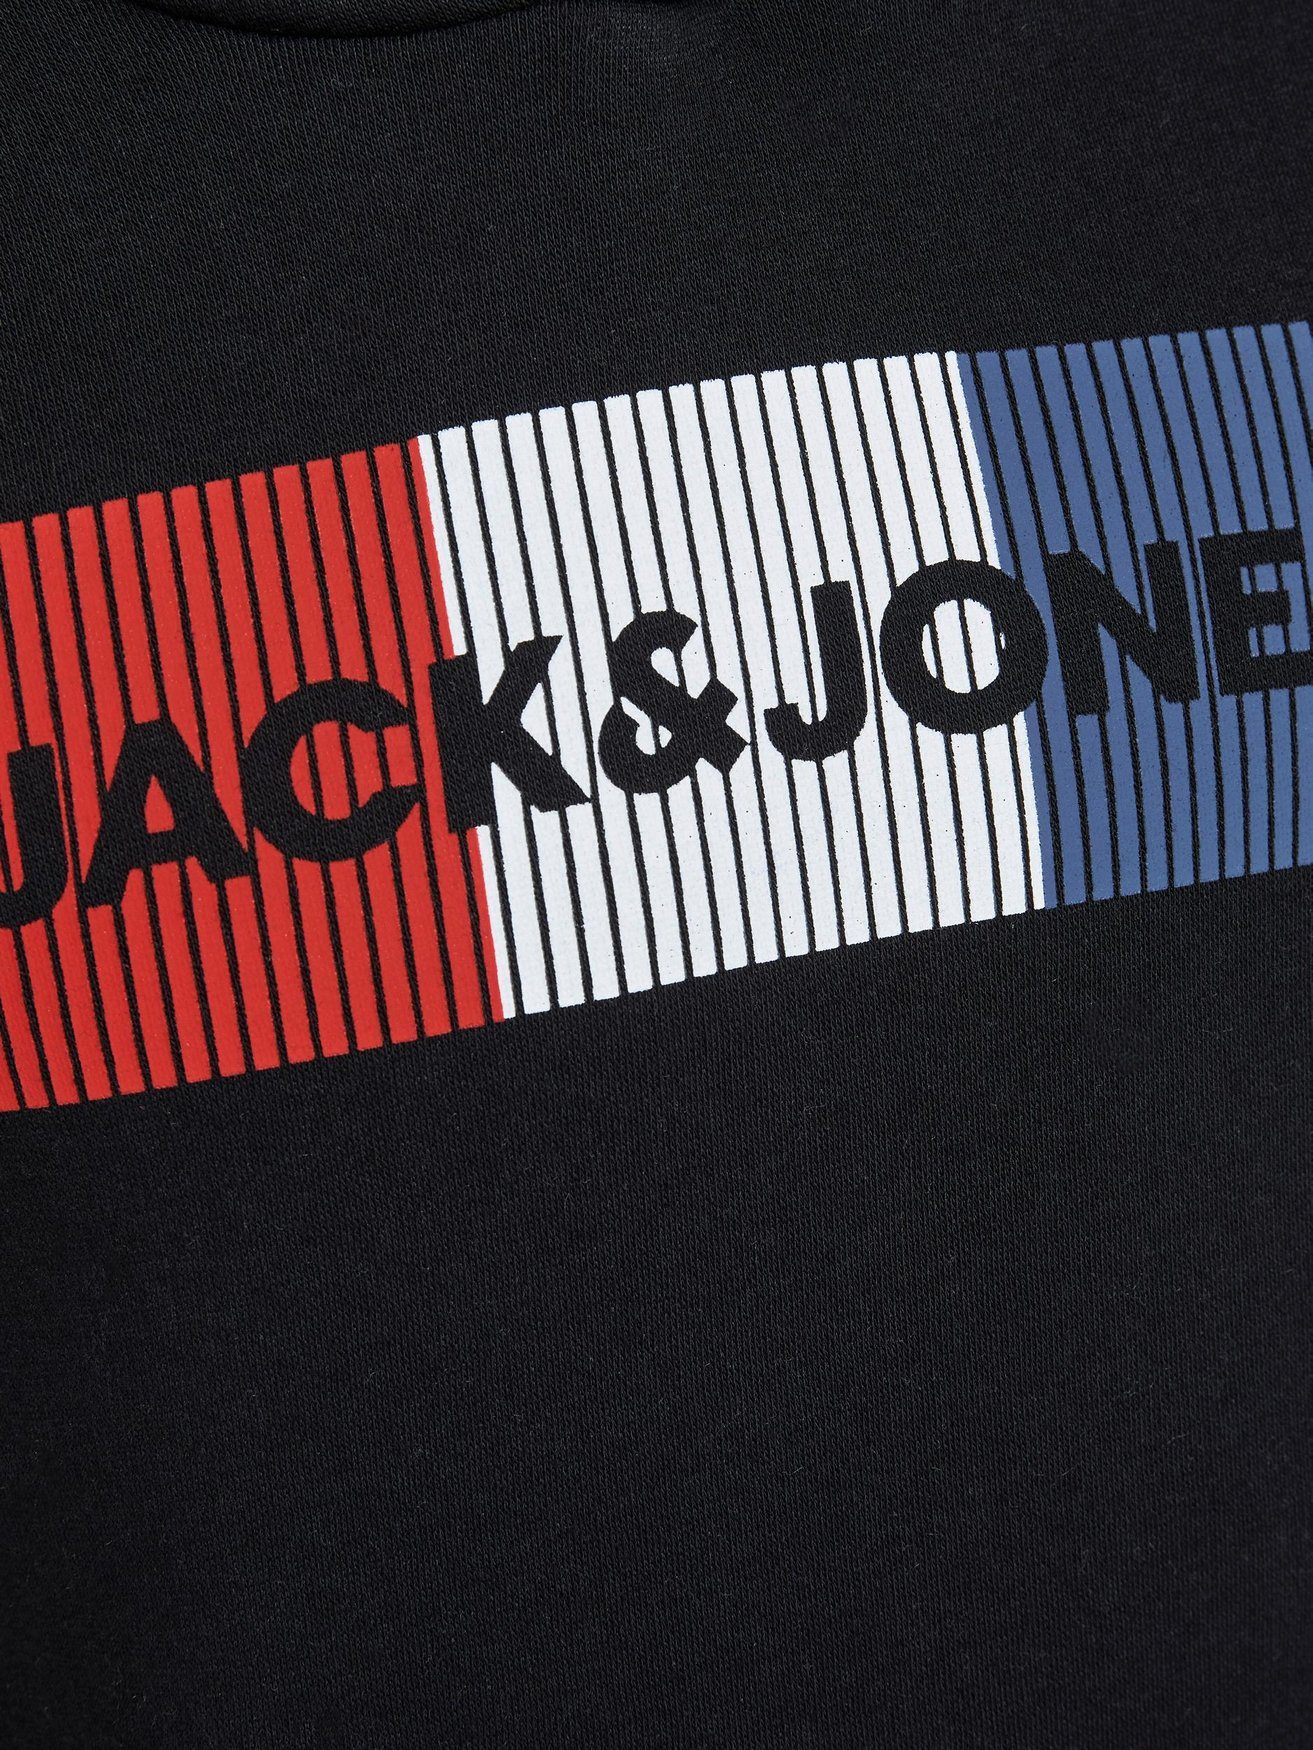 & Jones Jones Schwarz JJECORP Pullover Kapuzen Hoodie & 6502 Jack Hoodie Logo Jack Junior Sweater in